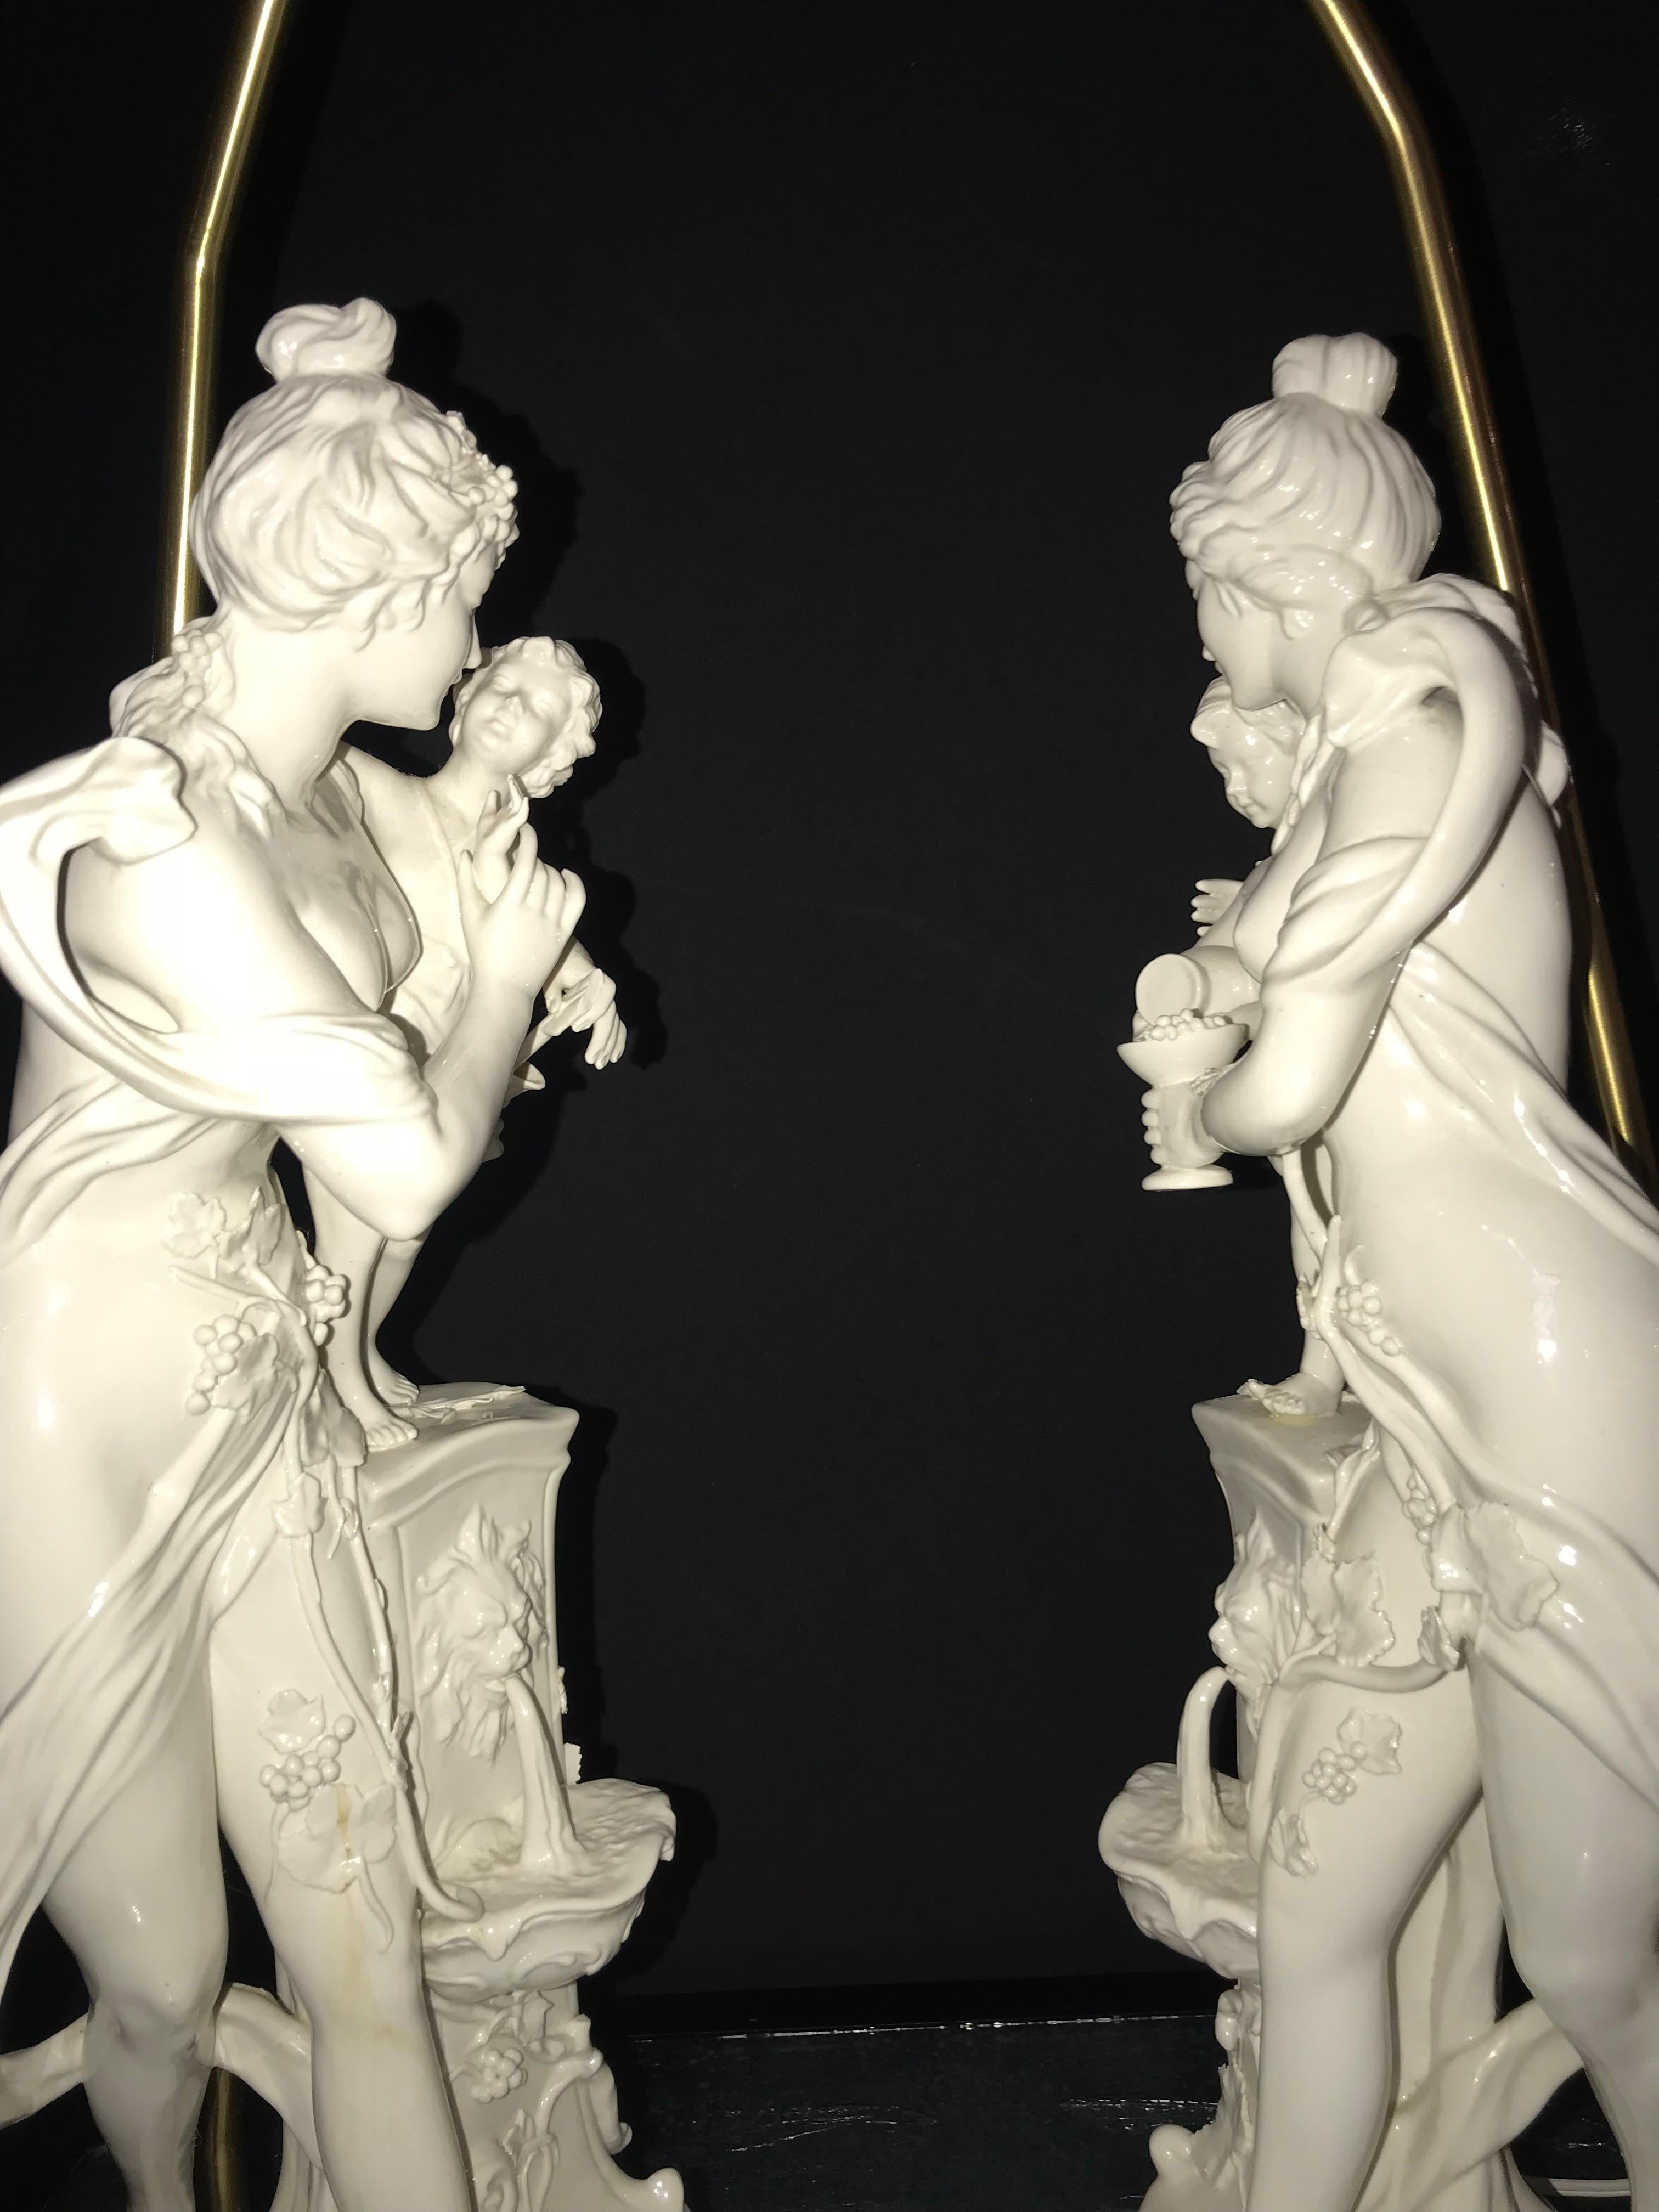 Pair of Large Porcelain Figural Opposing Bare Brested Woman & Angel Table Lamps (20. Jahrhundert)